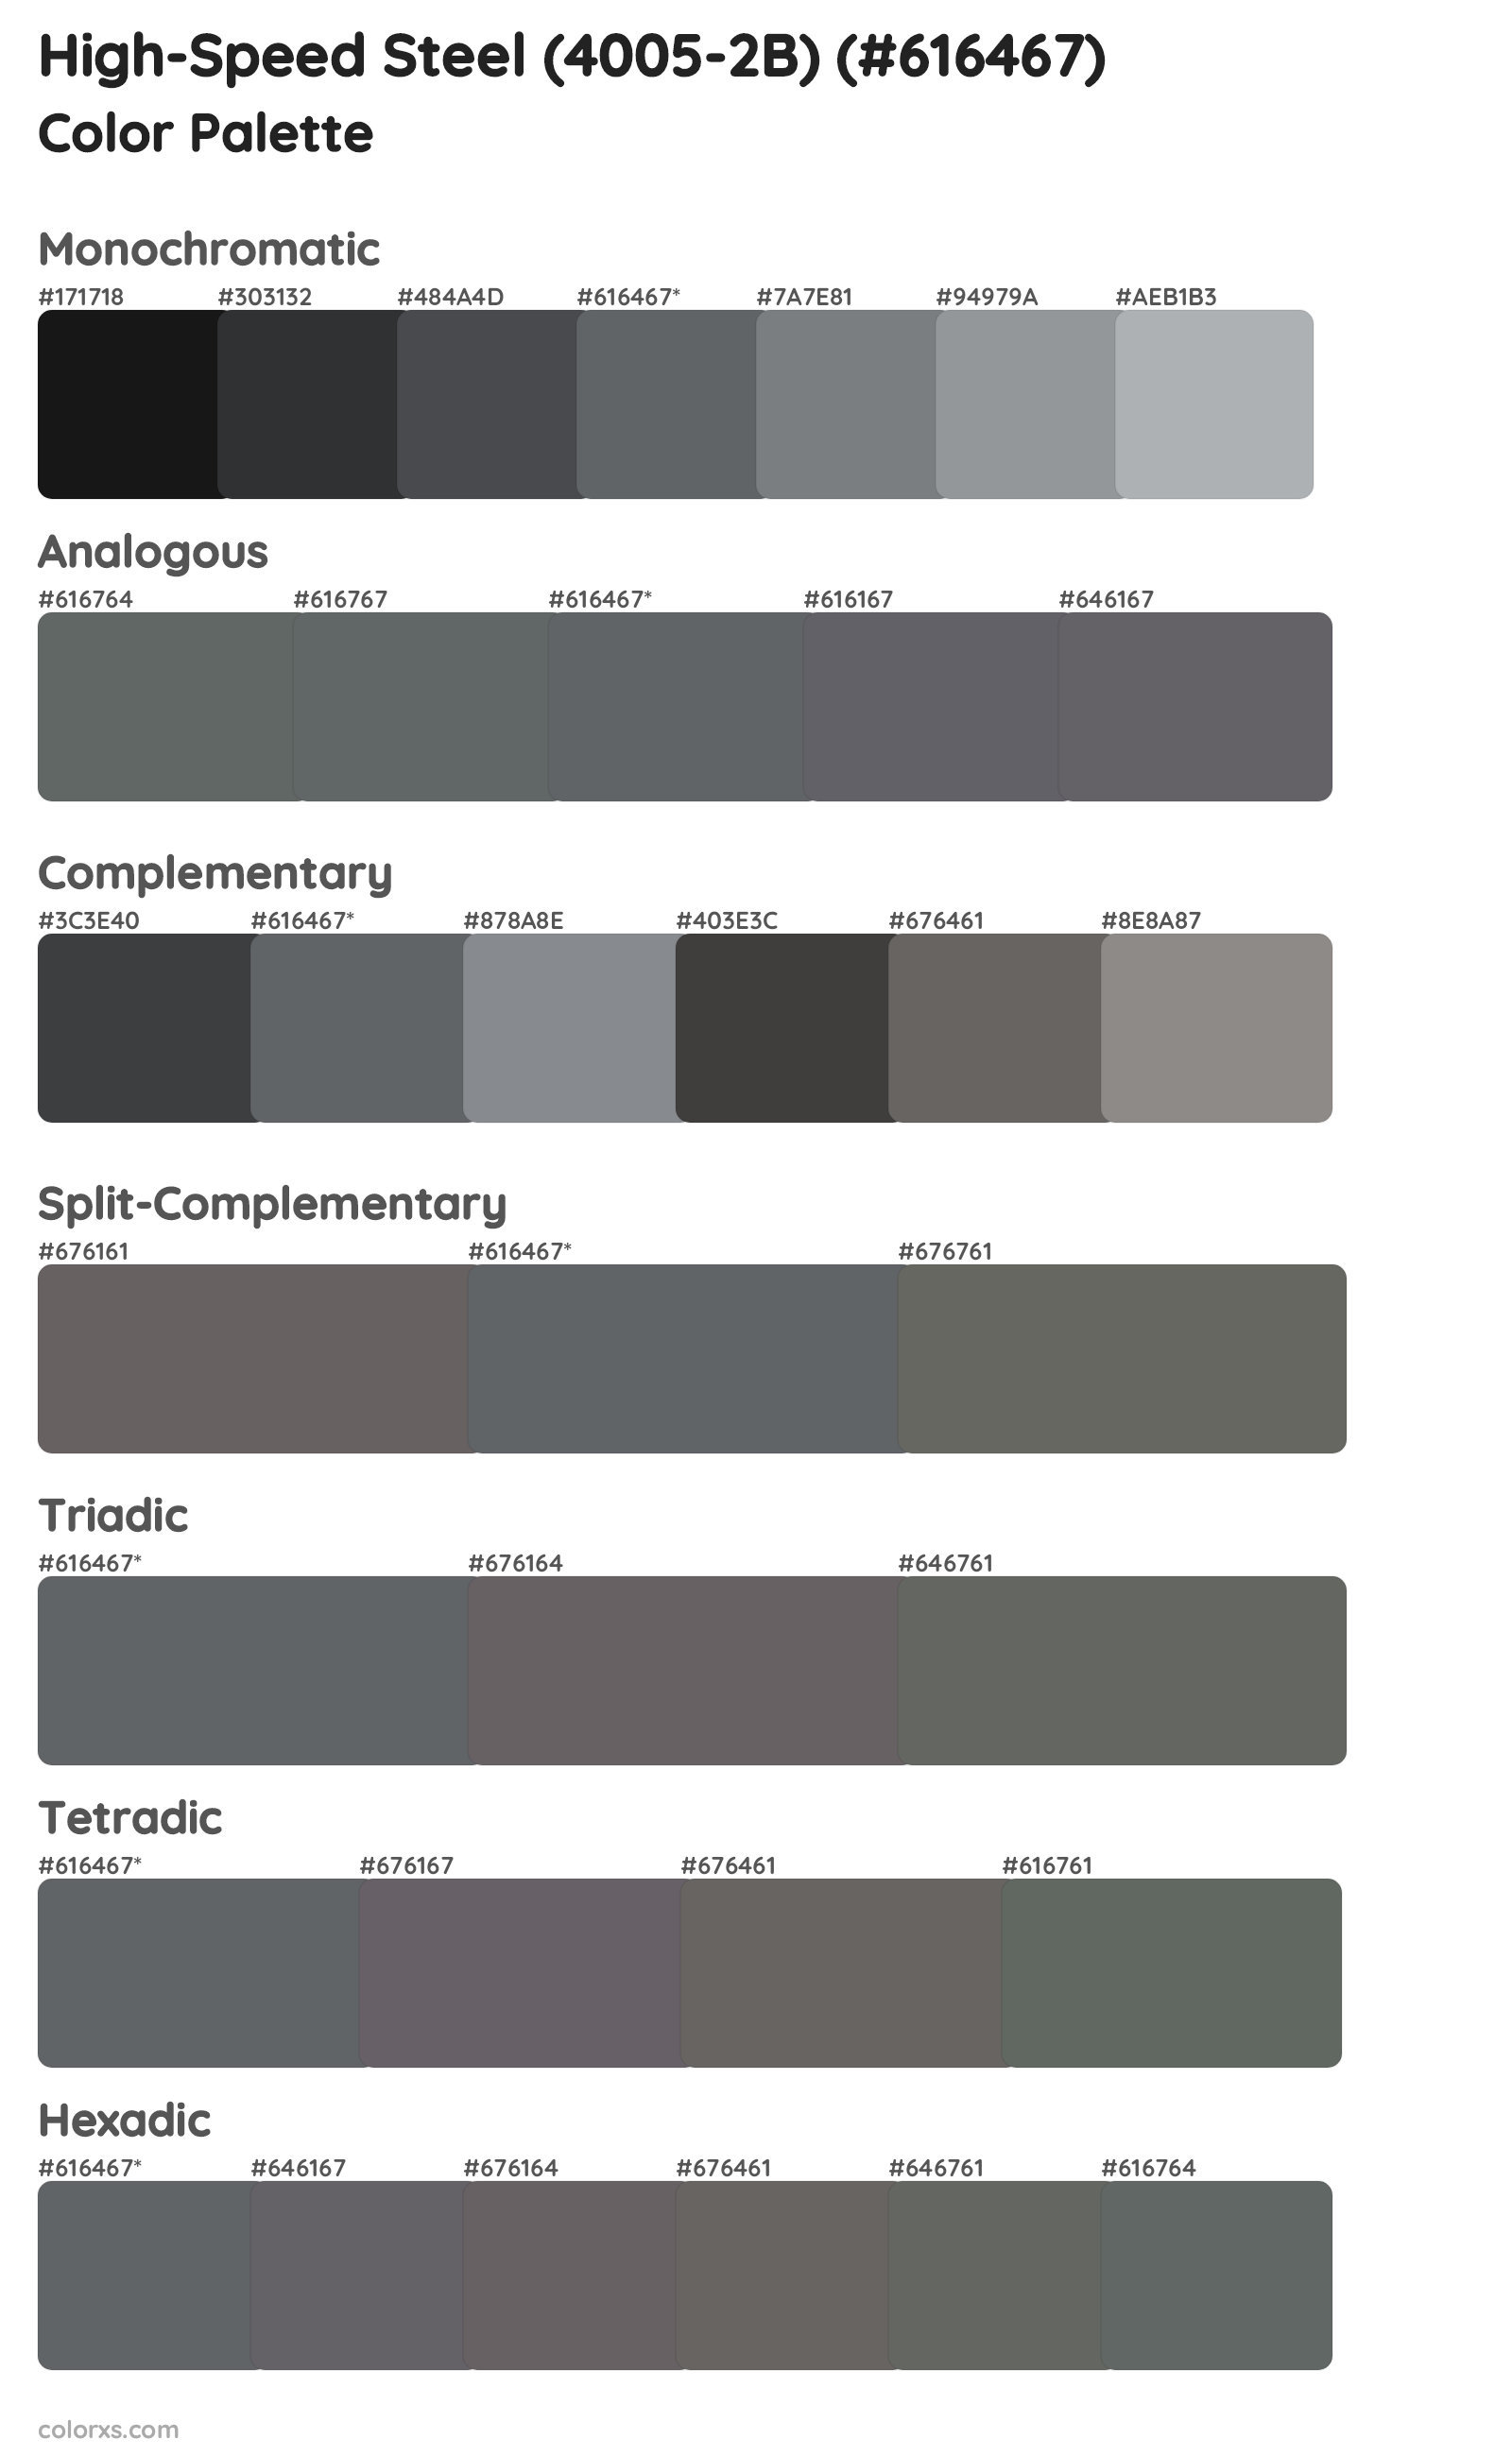 High-Speed Steel (4005-2B) Color Scheme Palettes